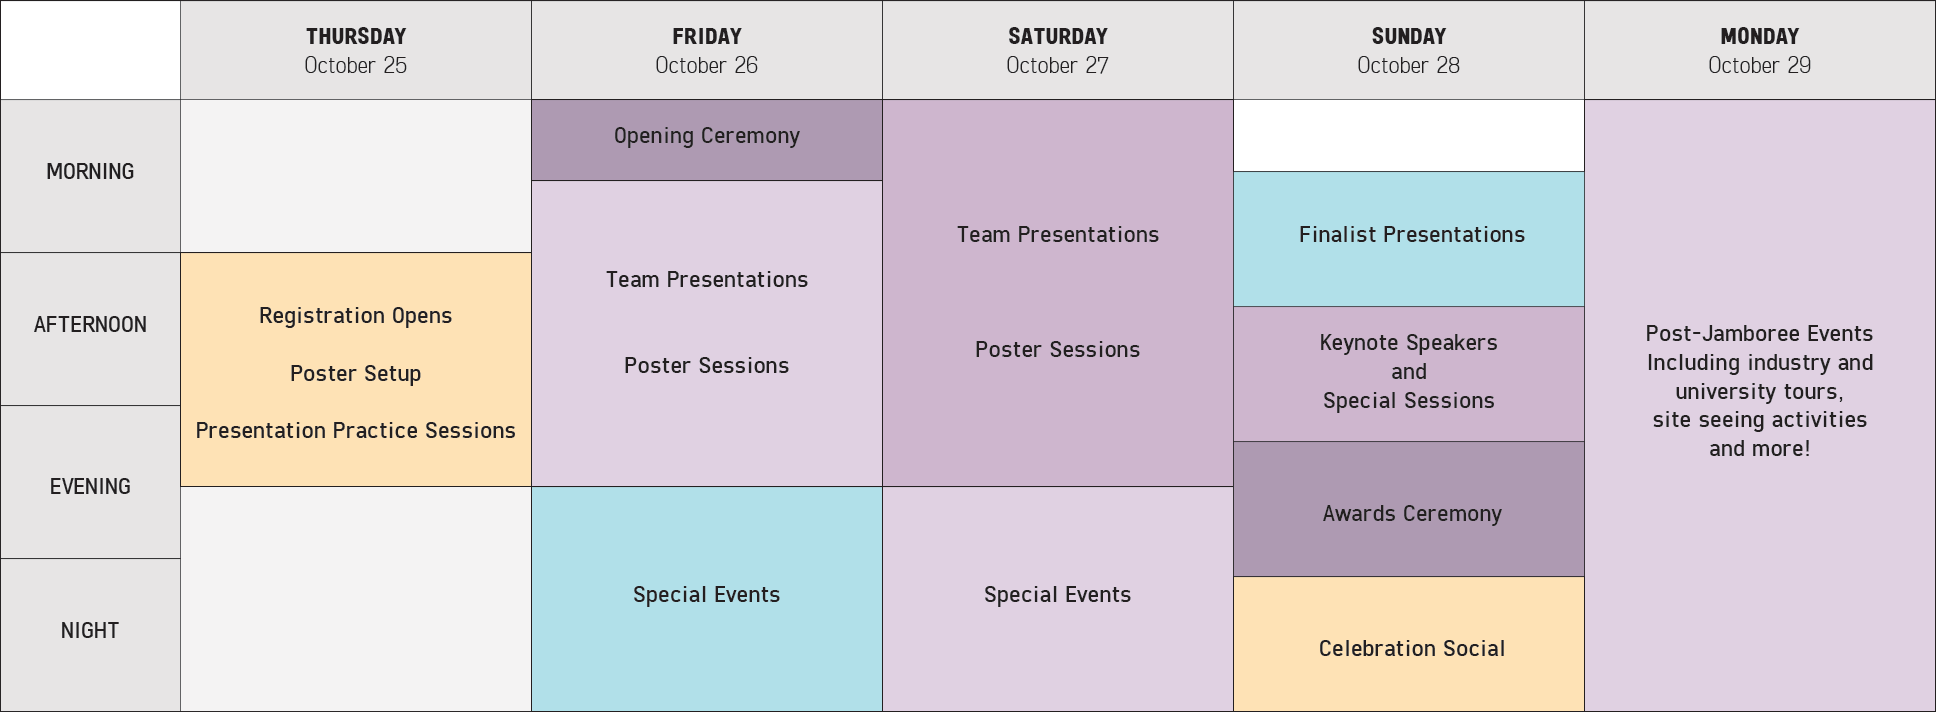 Schedule overview jamboree.png